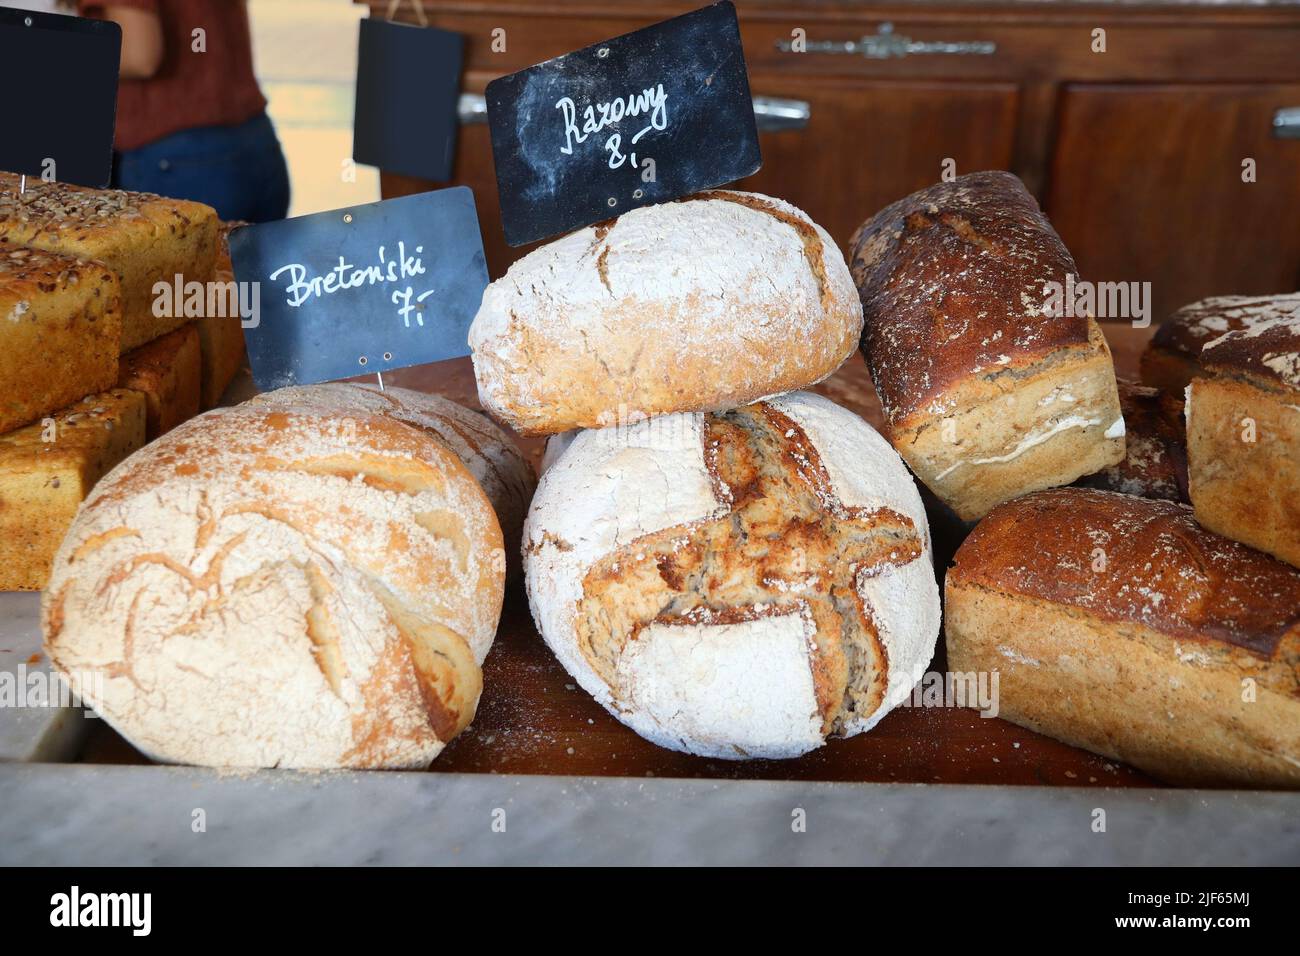 Artisanal bakery products in Poland. French style Breton bread (Polish language: Bretonski) and rye sourdough bread (Polish language: Razowy). Stock Photo